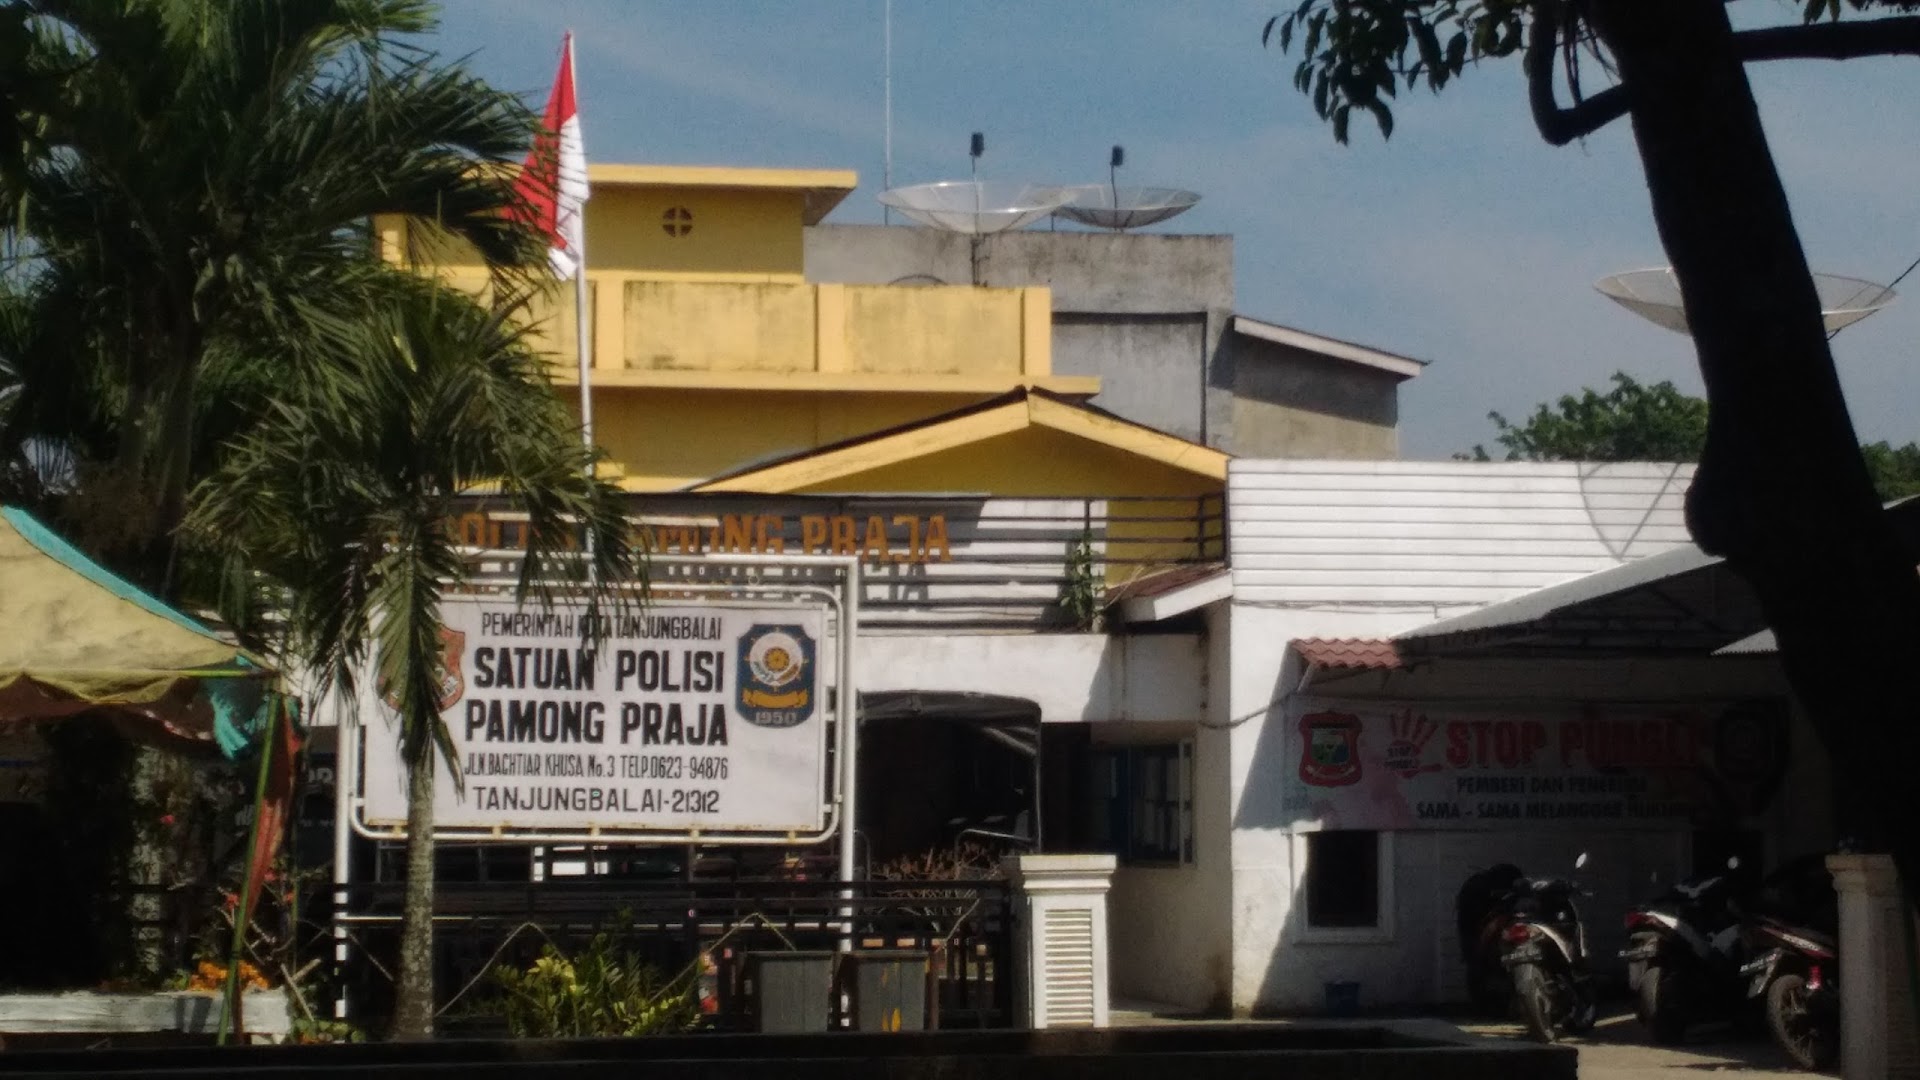 Satuan Polisi Pamong Praja Tanjungbalai Photo